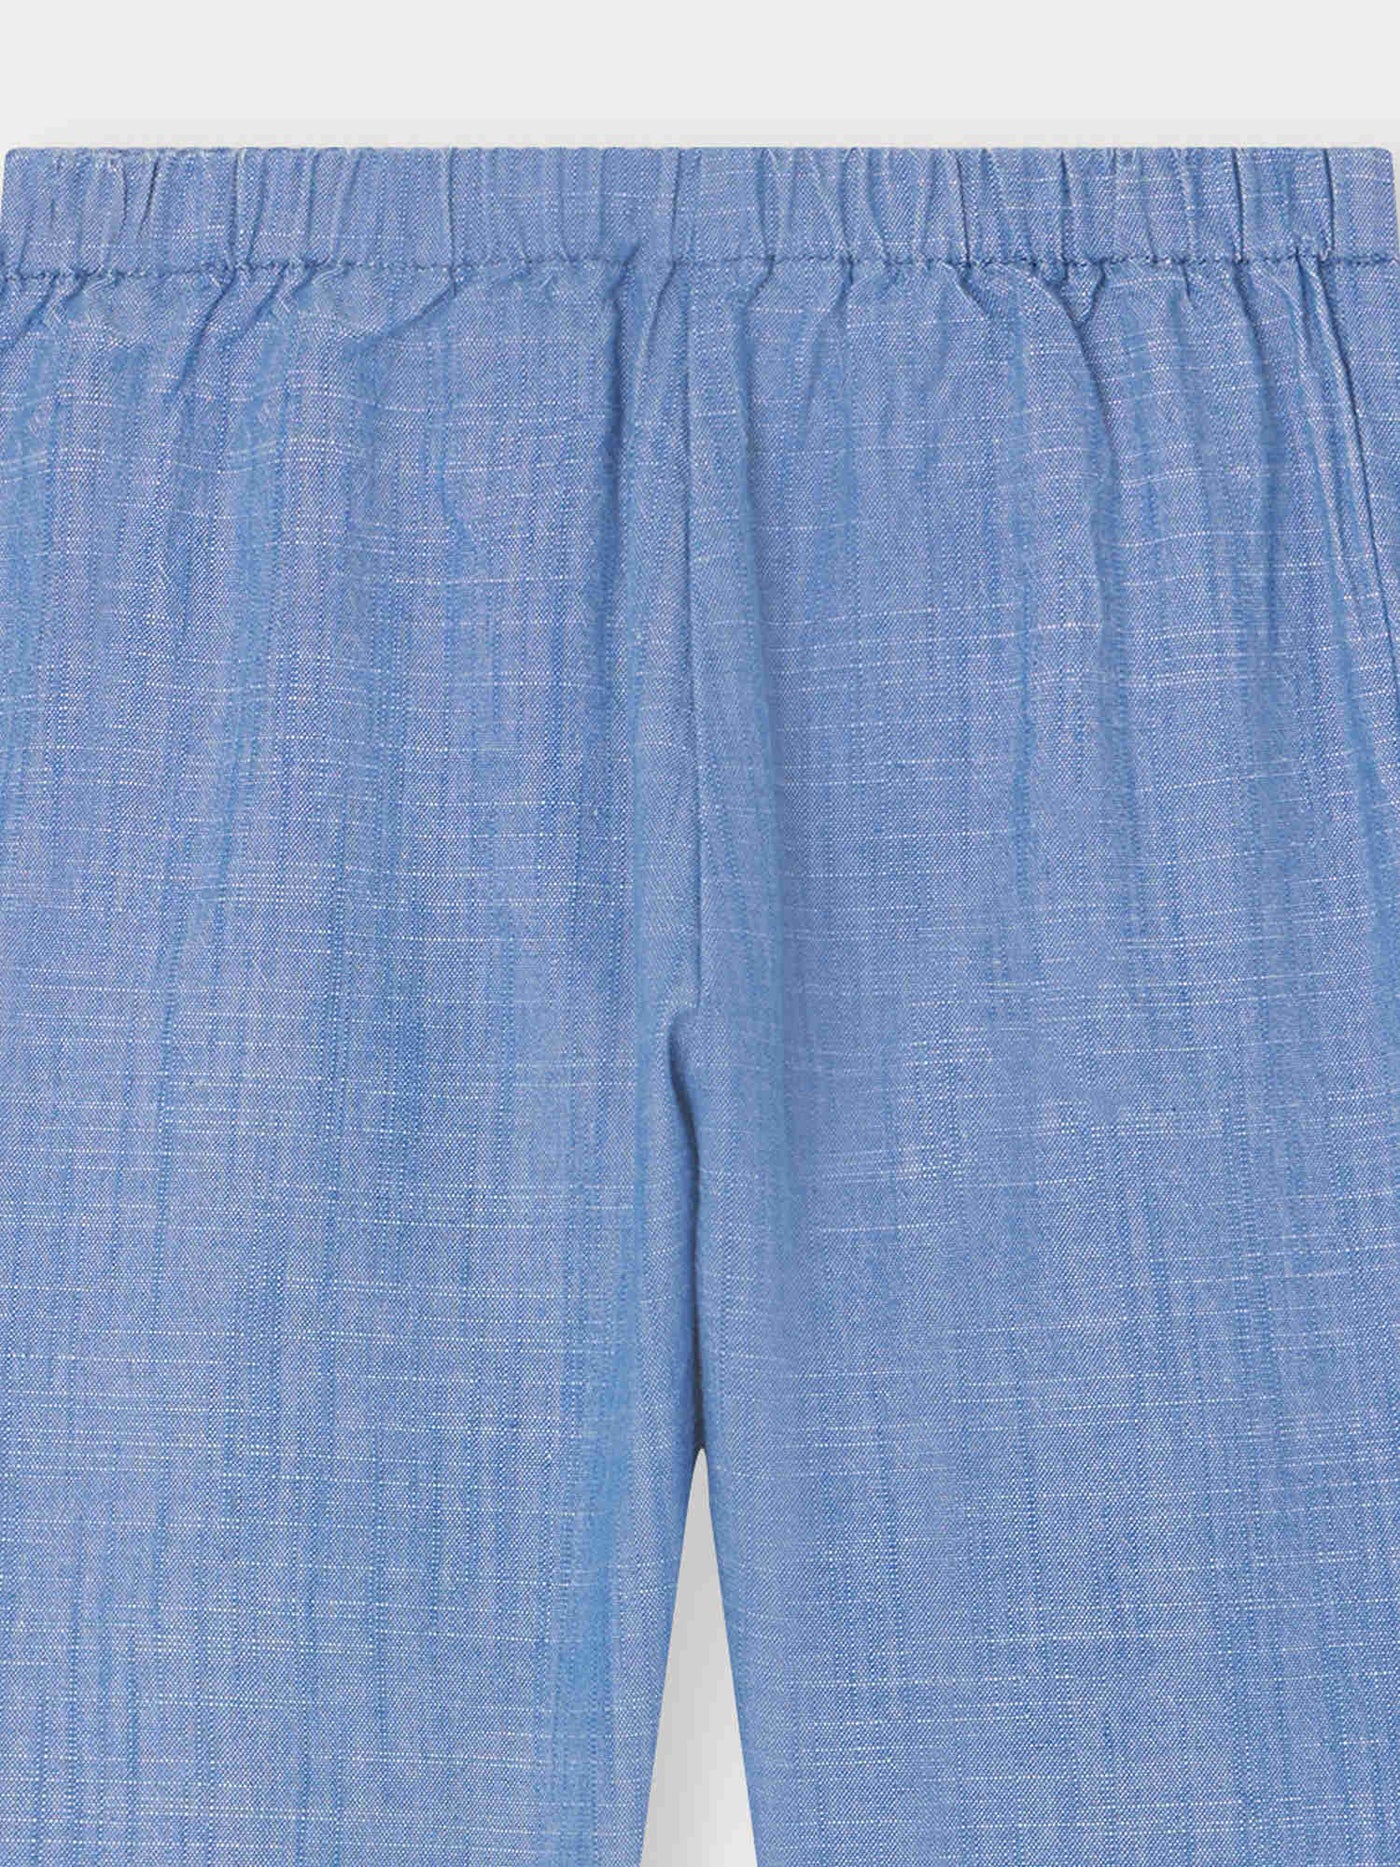 Pantalon Bandy bleu